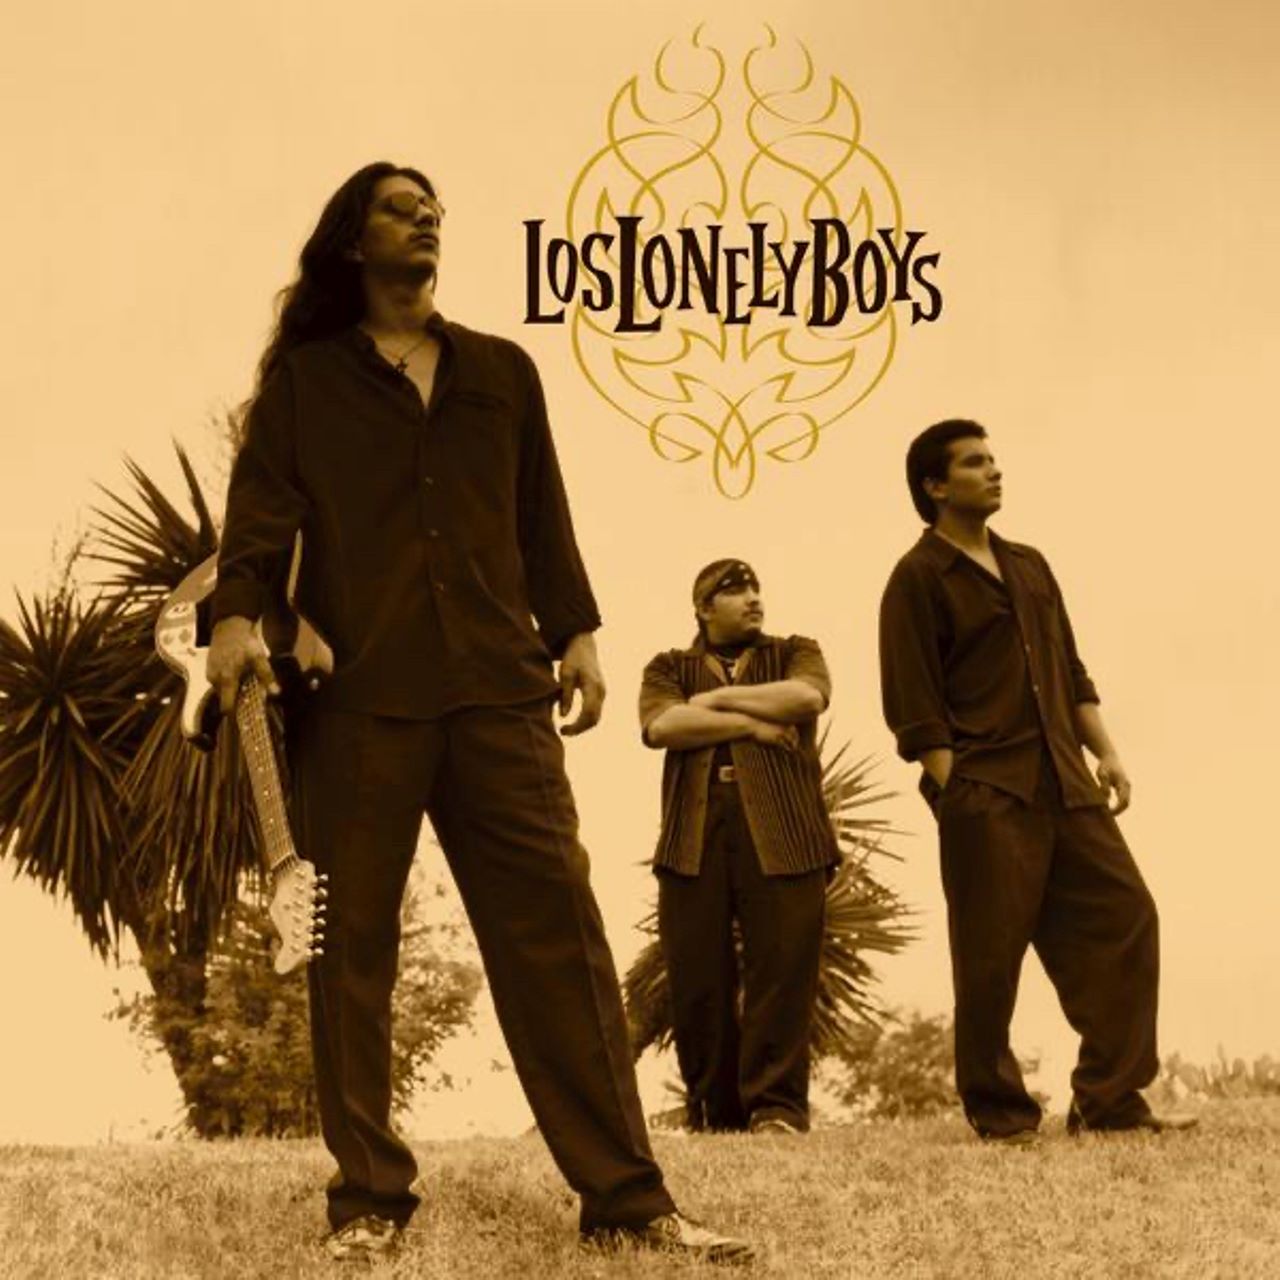 Los Lonely Boys – Los Lonely Boys cover album